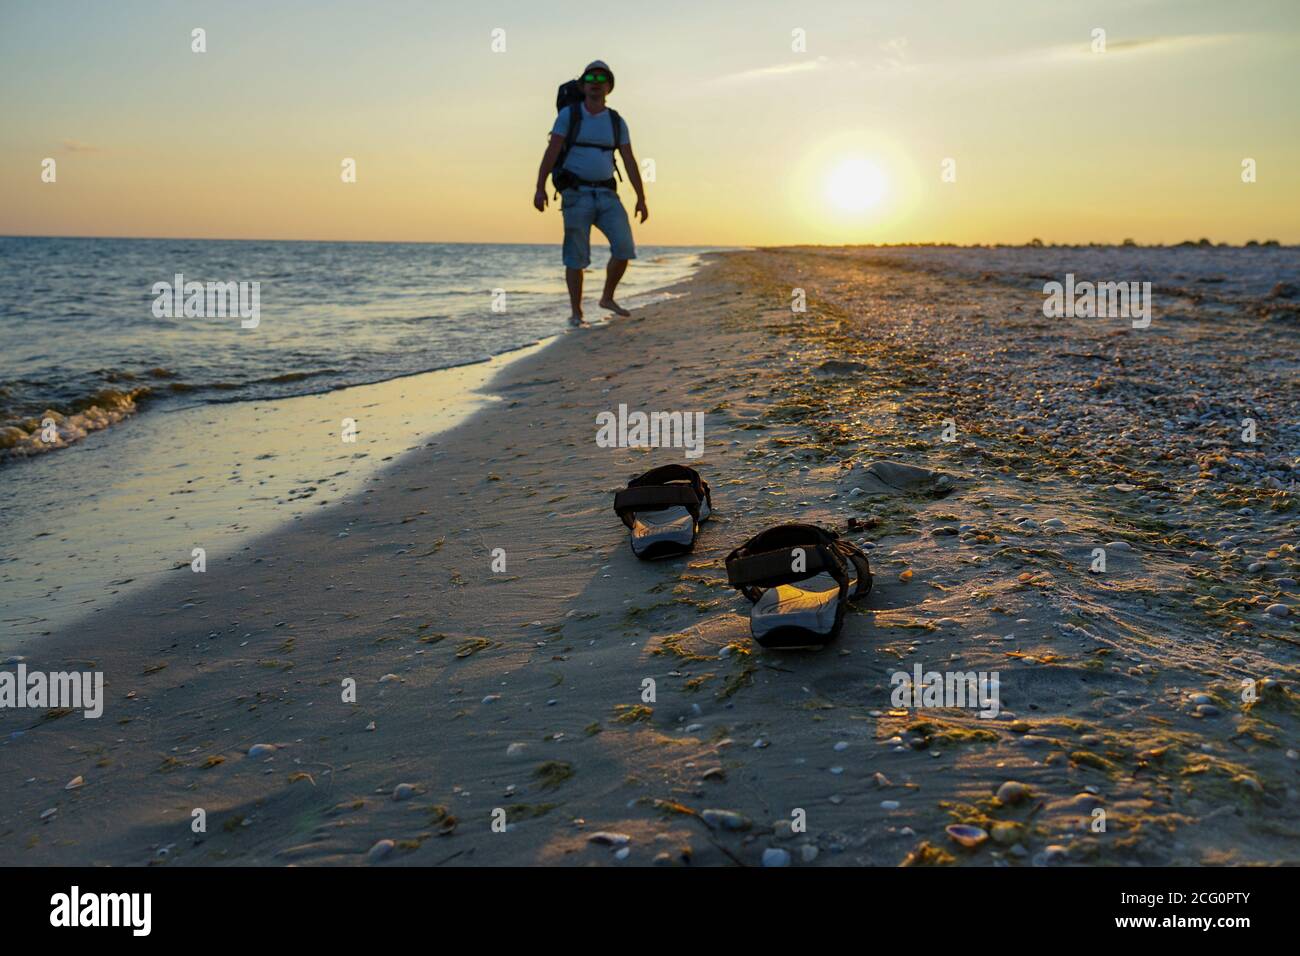 sandali su sabbia bagnata vicino al mare. Il ragazzo cammina con uno zaino  lungo la costa. I raggi del sole serale si riflettono nella sabbia bagnata  Foto stock - Alamy